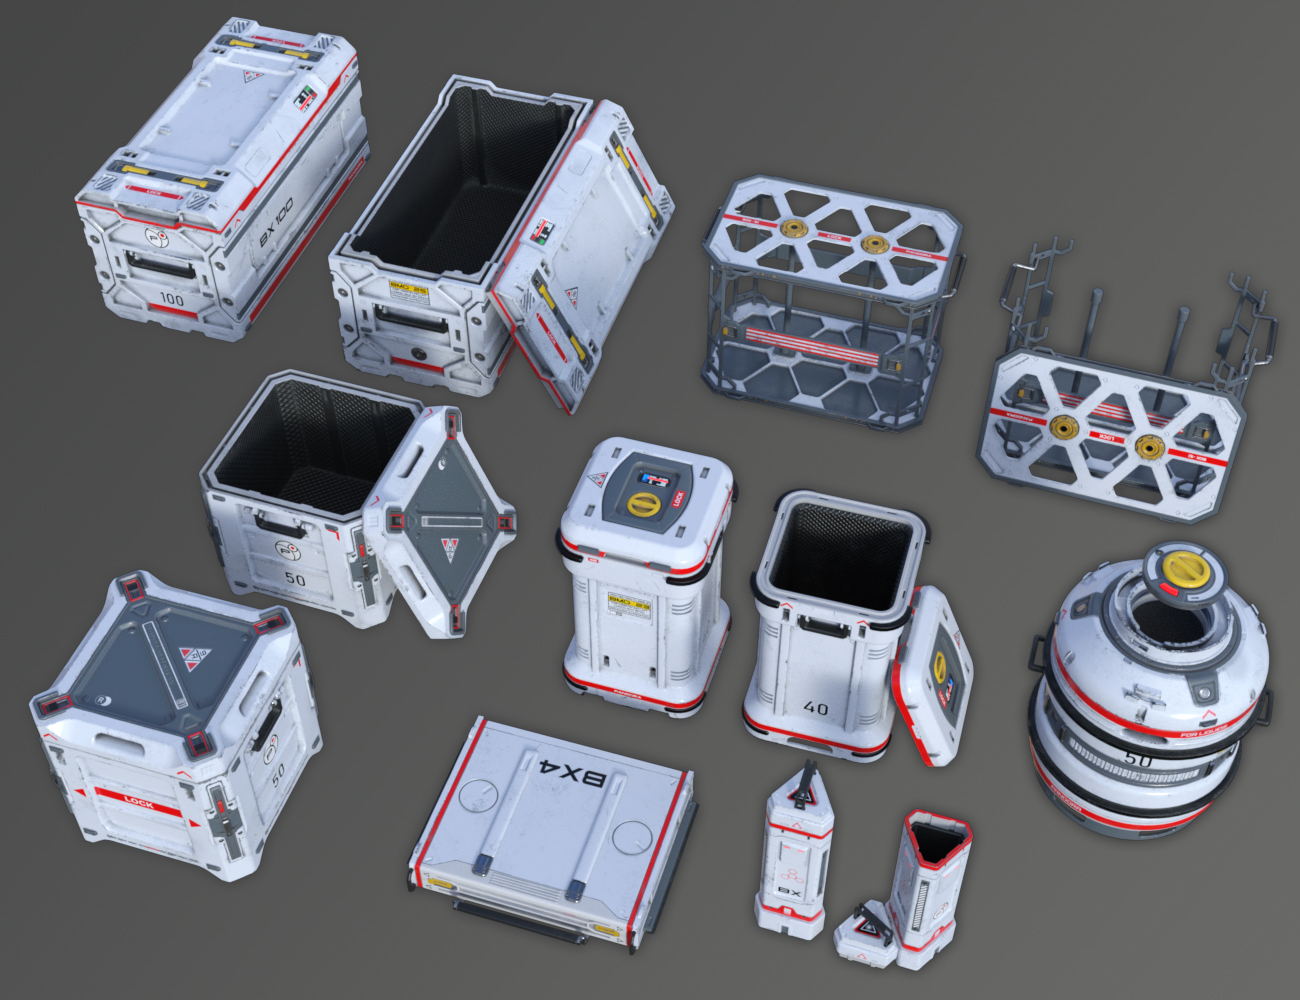 Sci-Fi Box 2 by: petipet, 3D Models by Daz 3D